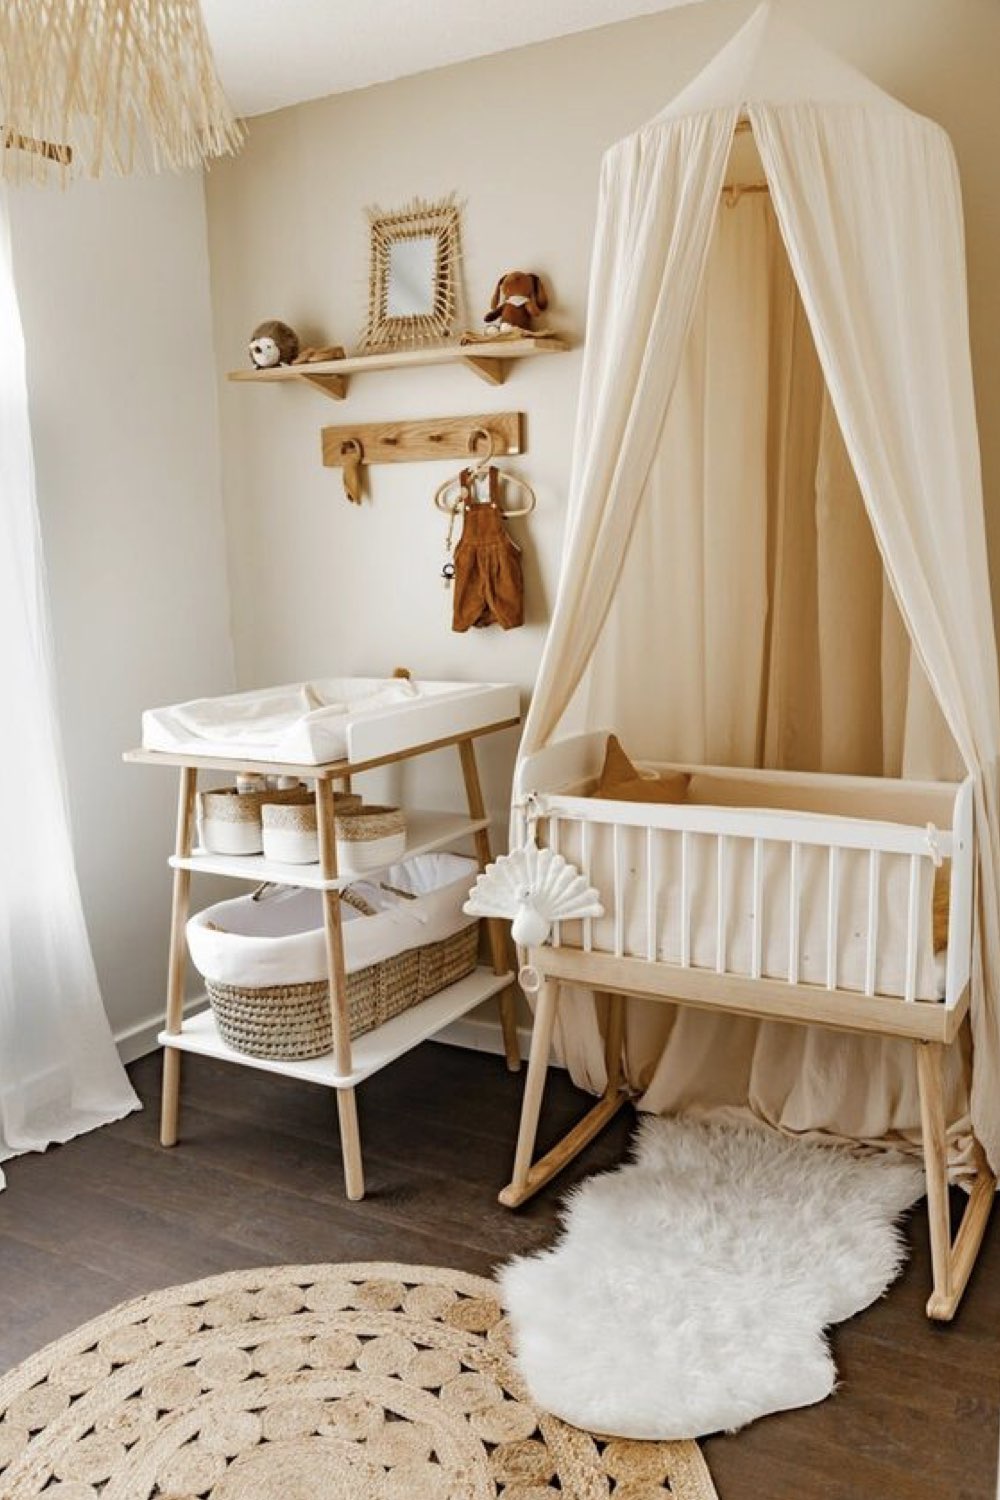 deco chambre bebe fille exemple berceau en bois ciel de lit blanc petite table à langer couleur neutre et douce